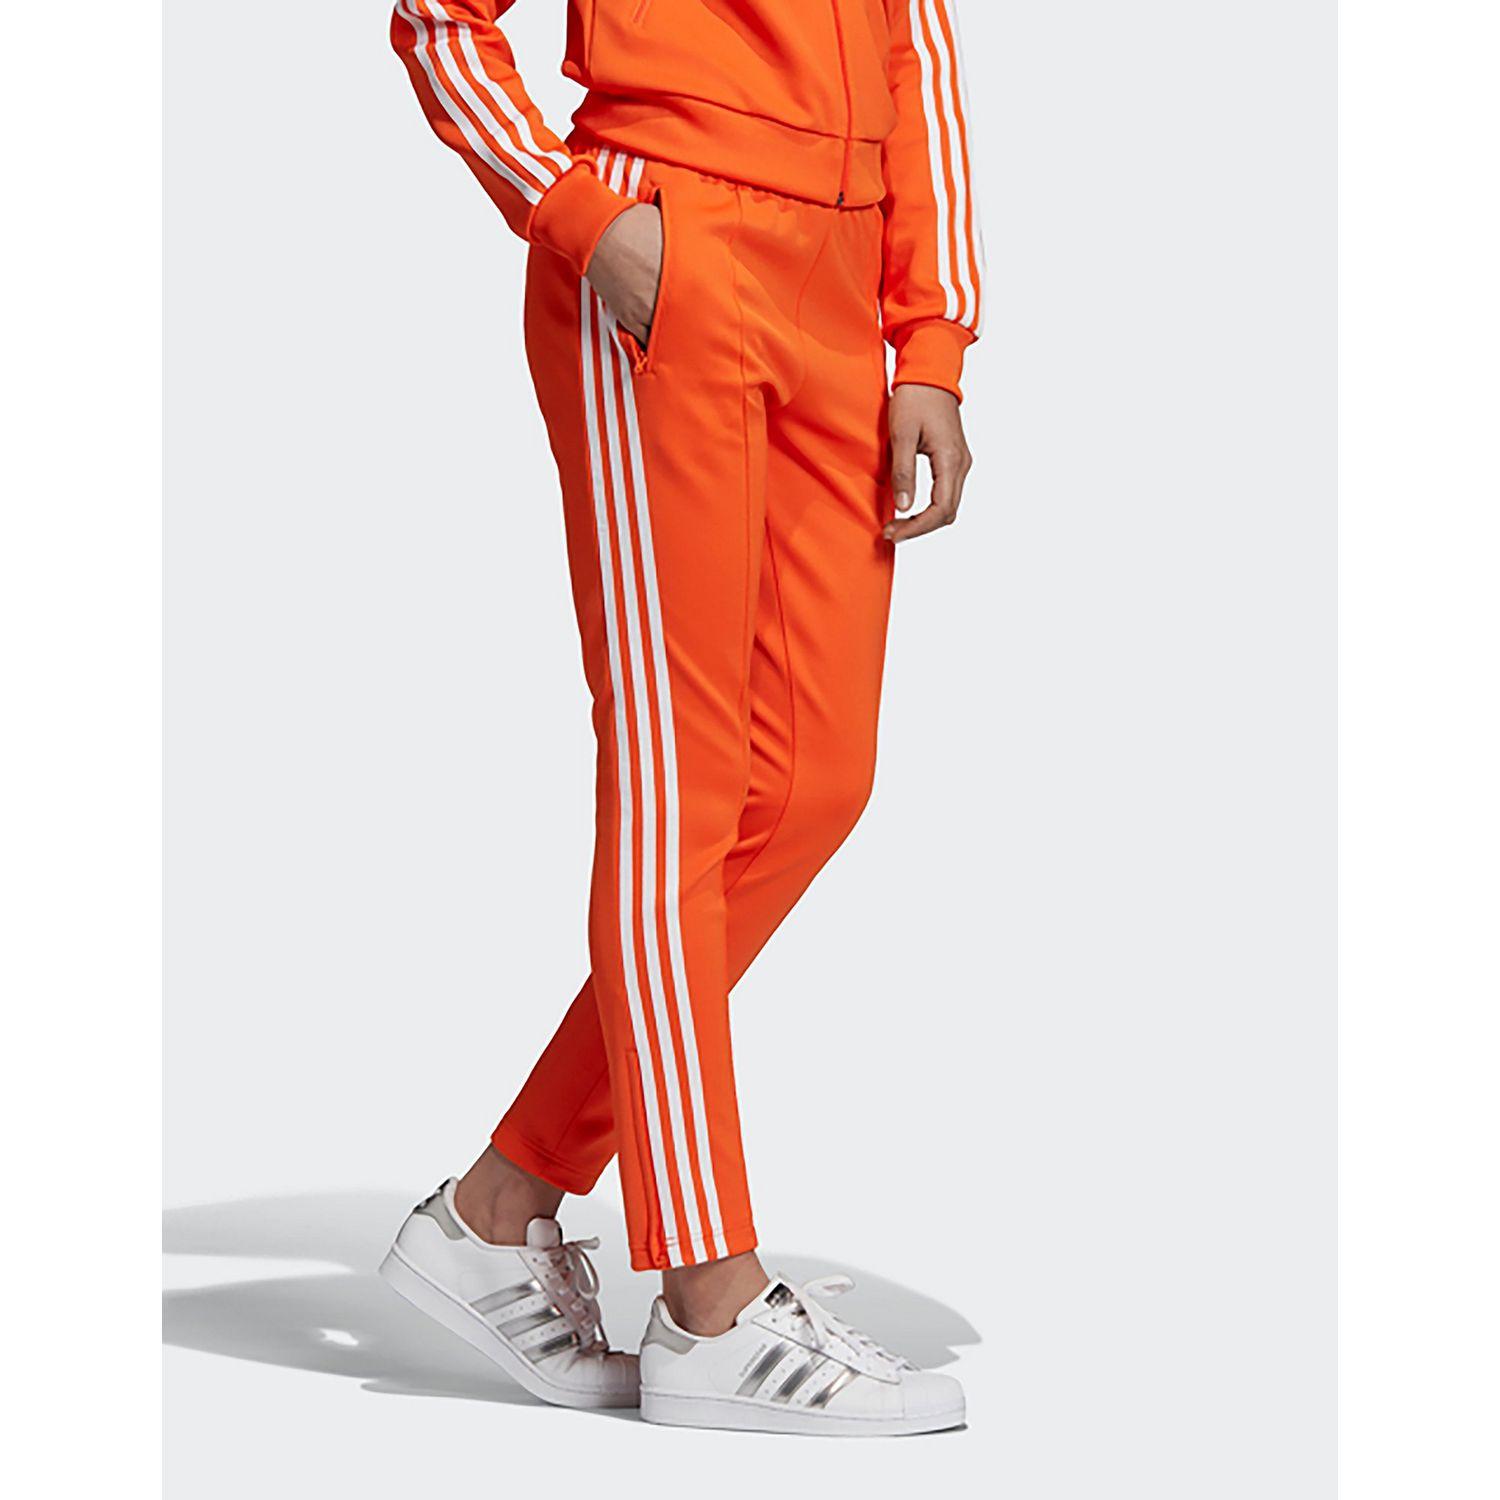 orange adidas jogging suit